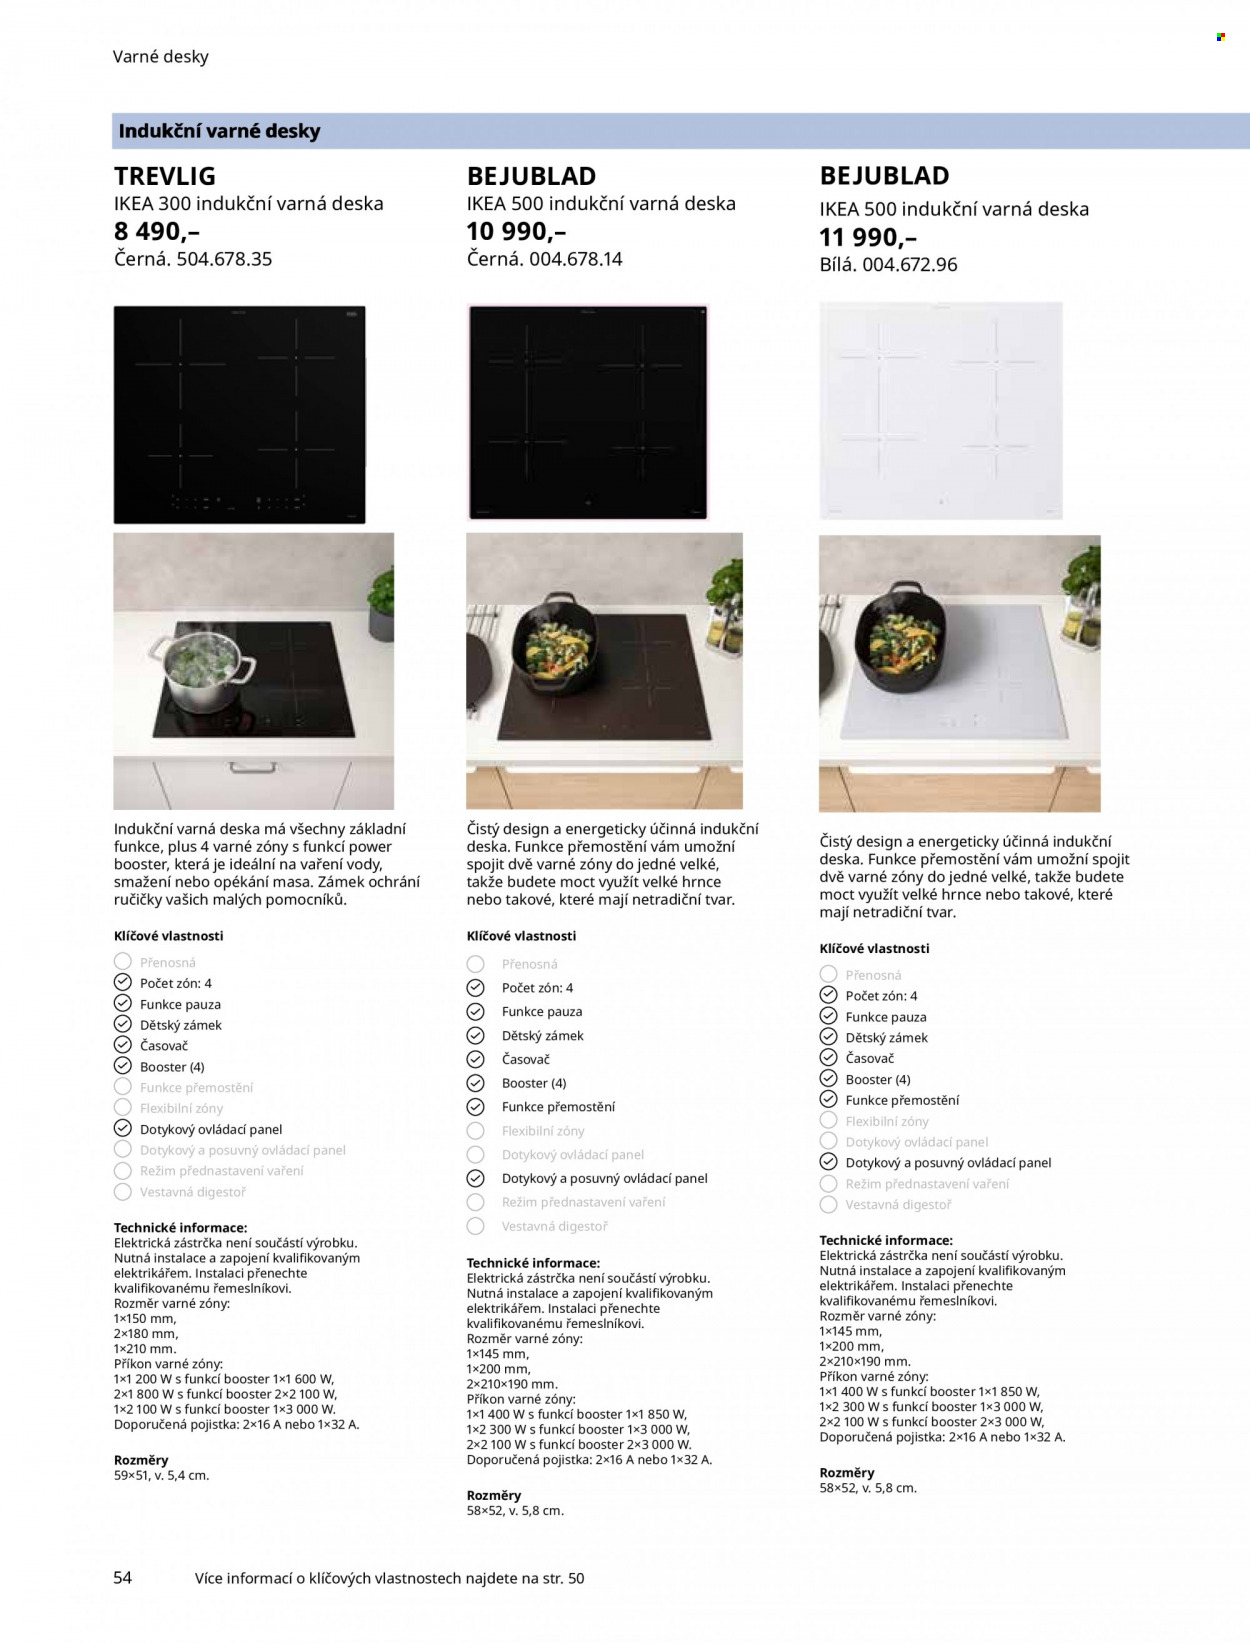 thumbnail - Leták IKEA - Produkty v akci - hrnec, digestoř, indukční varná deska, varná deska. Strana 54.